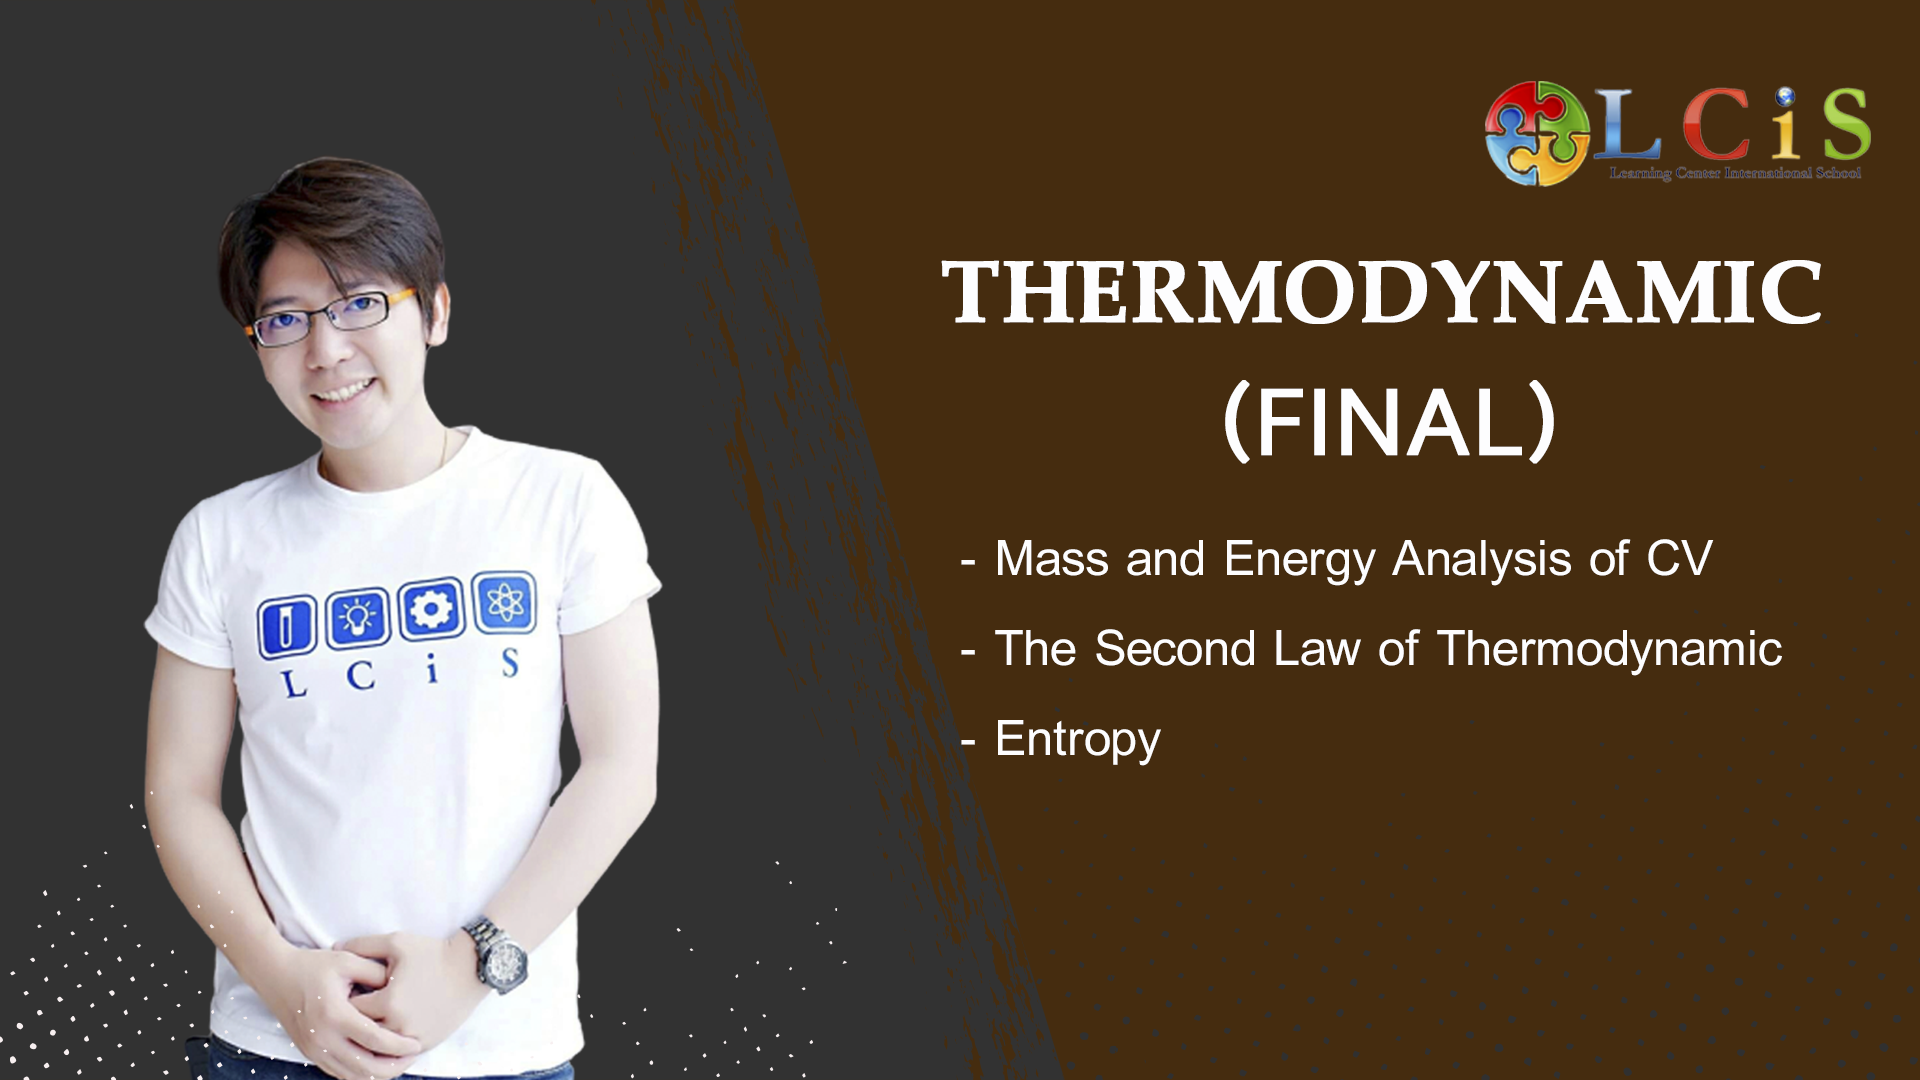 Thermodynamic (ME) Final